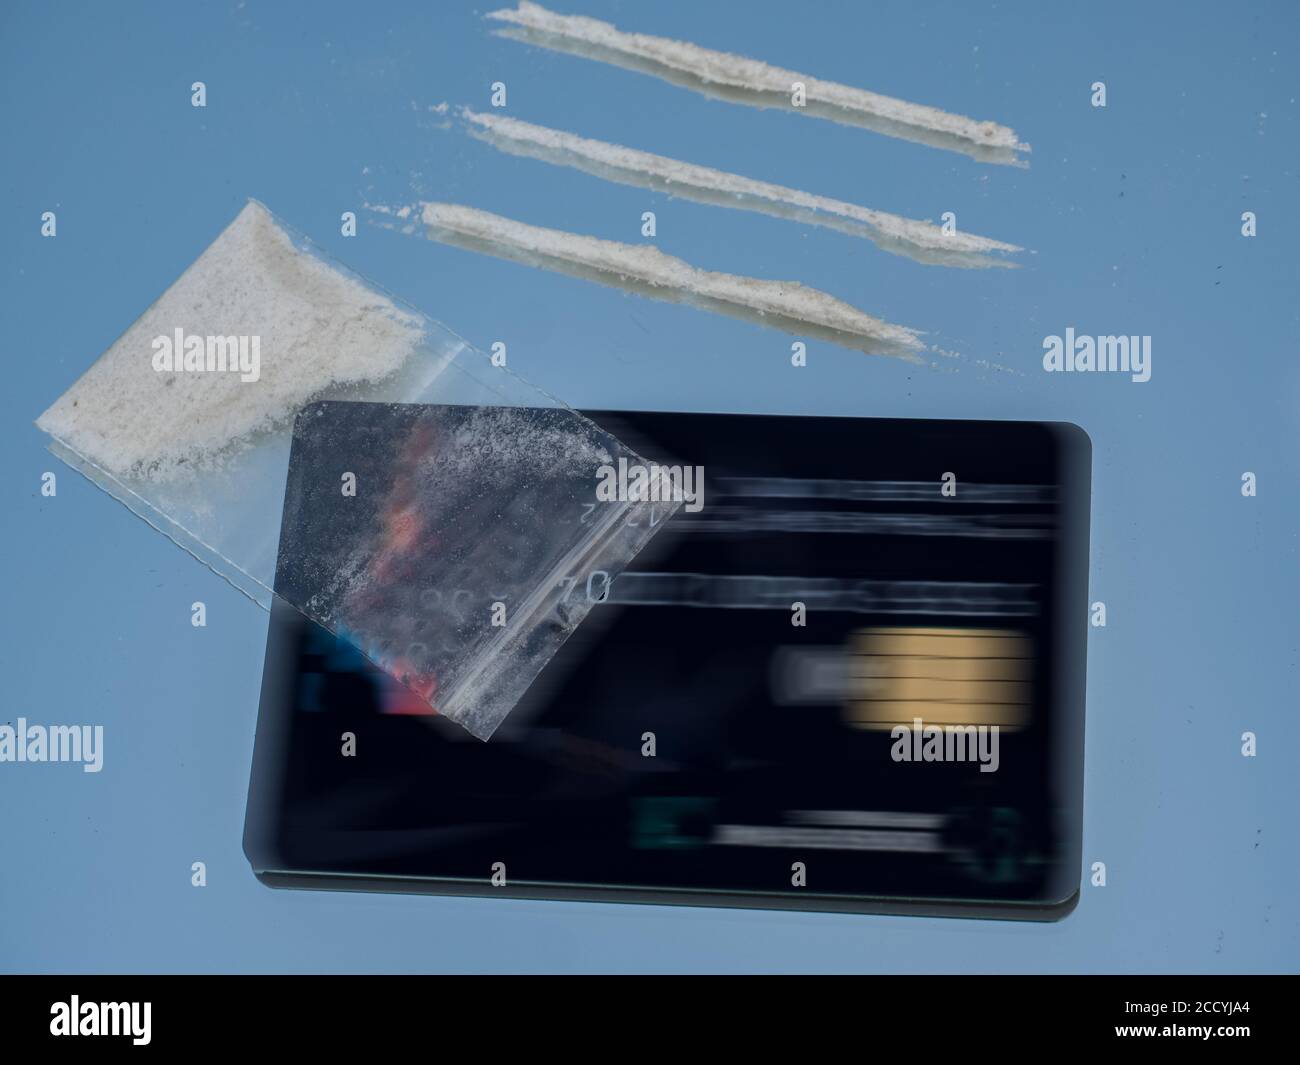 Médicament en cristal avec sac et carte de paiement Banque D'Images